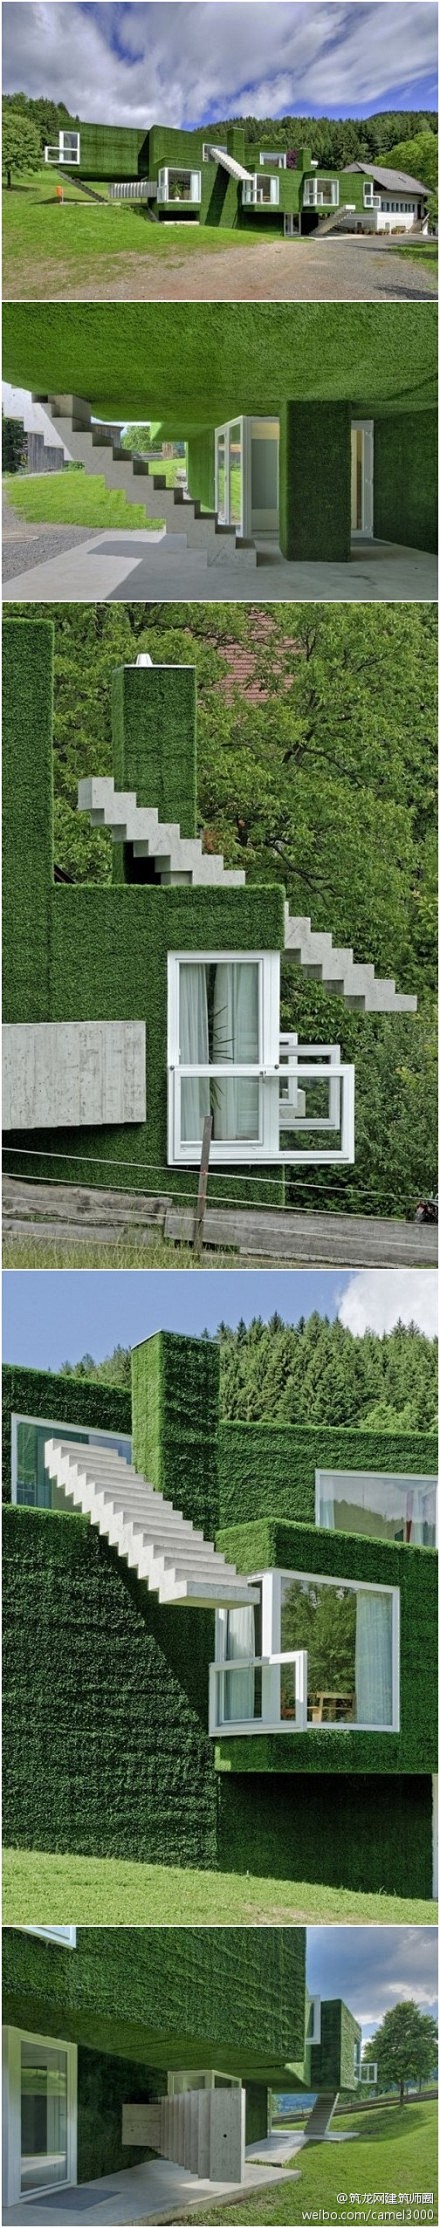 草覆盖的房子,奥地利。
房子的楼梯也是...